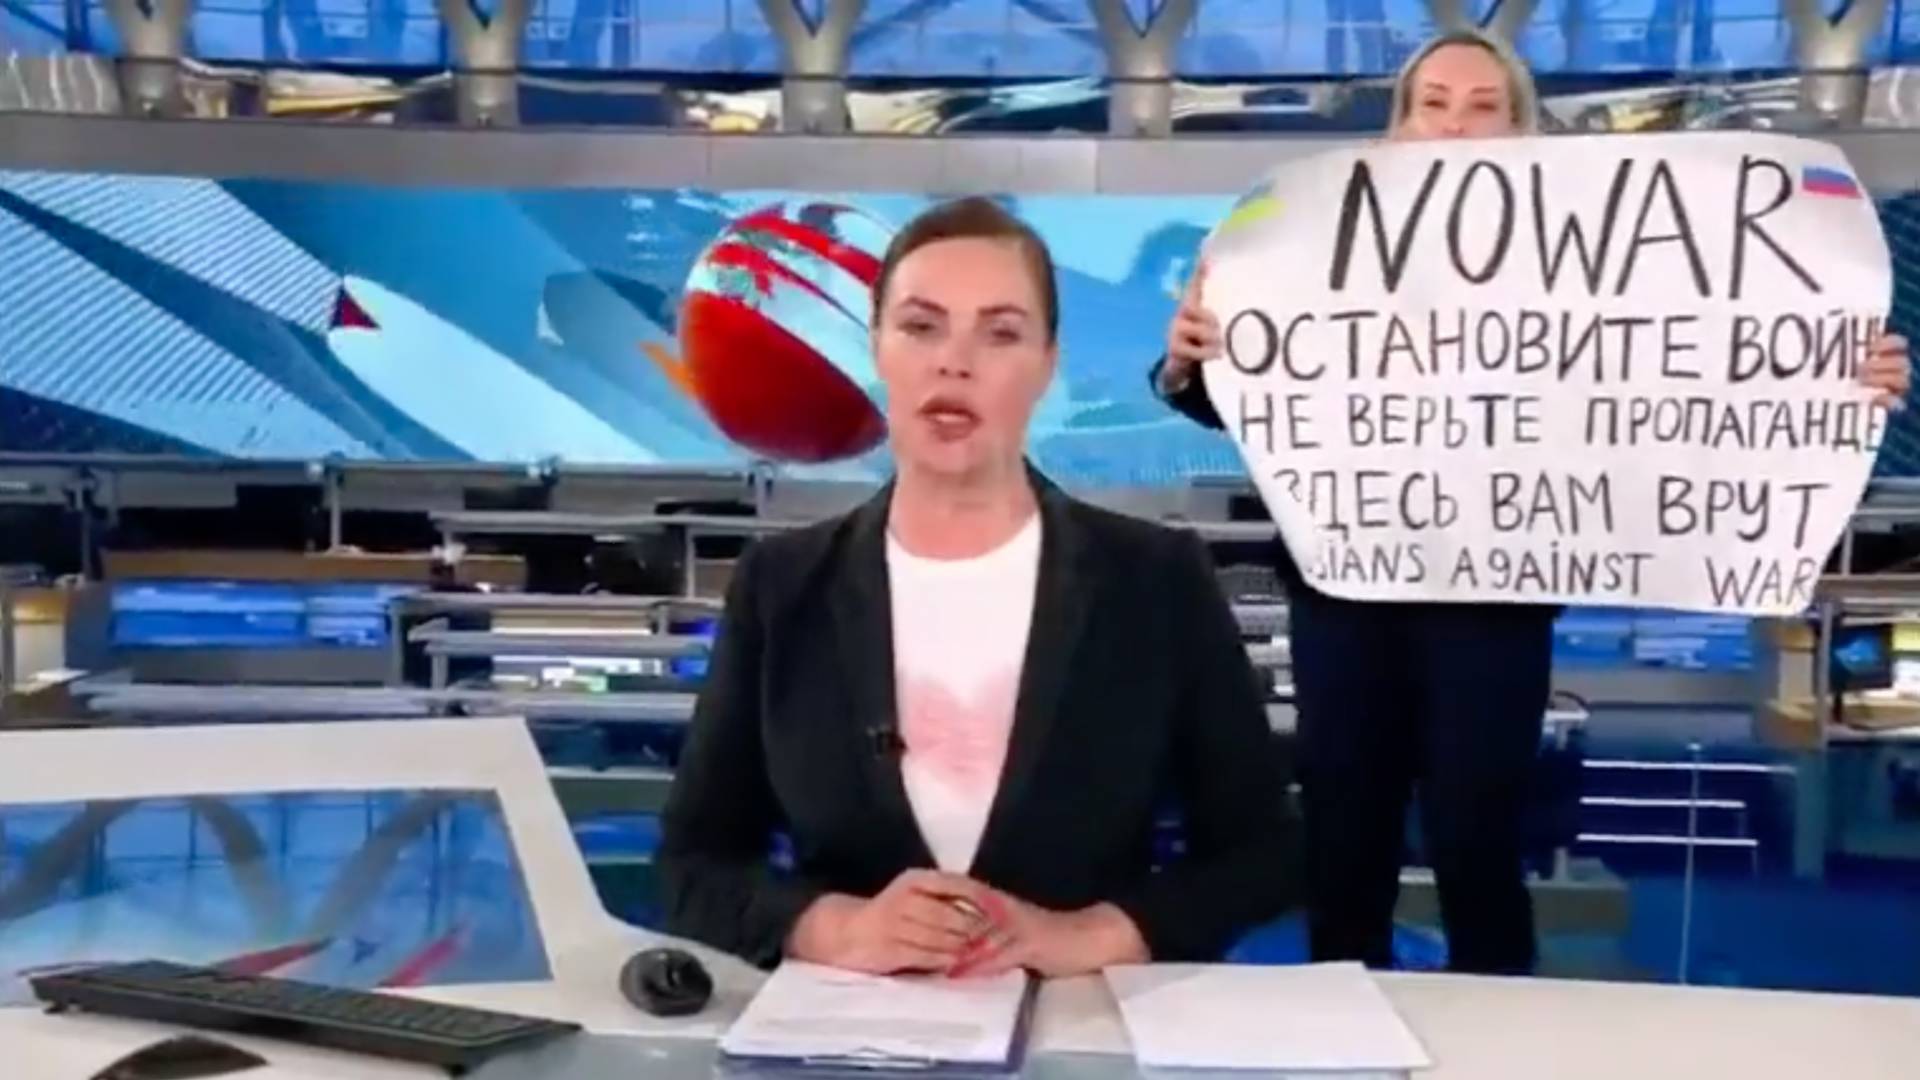 Przerwała wiadomości w rosyjskiej TV z antywojennym plakatem. Jest wyrok dla dziennikarki